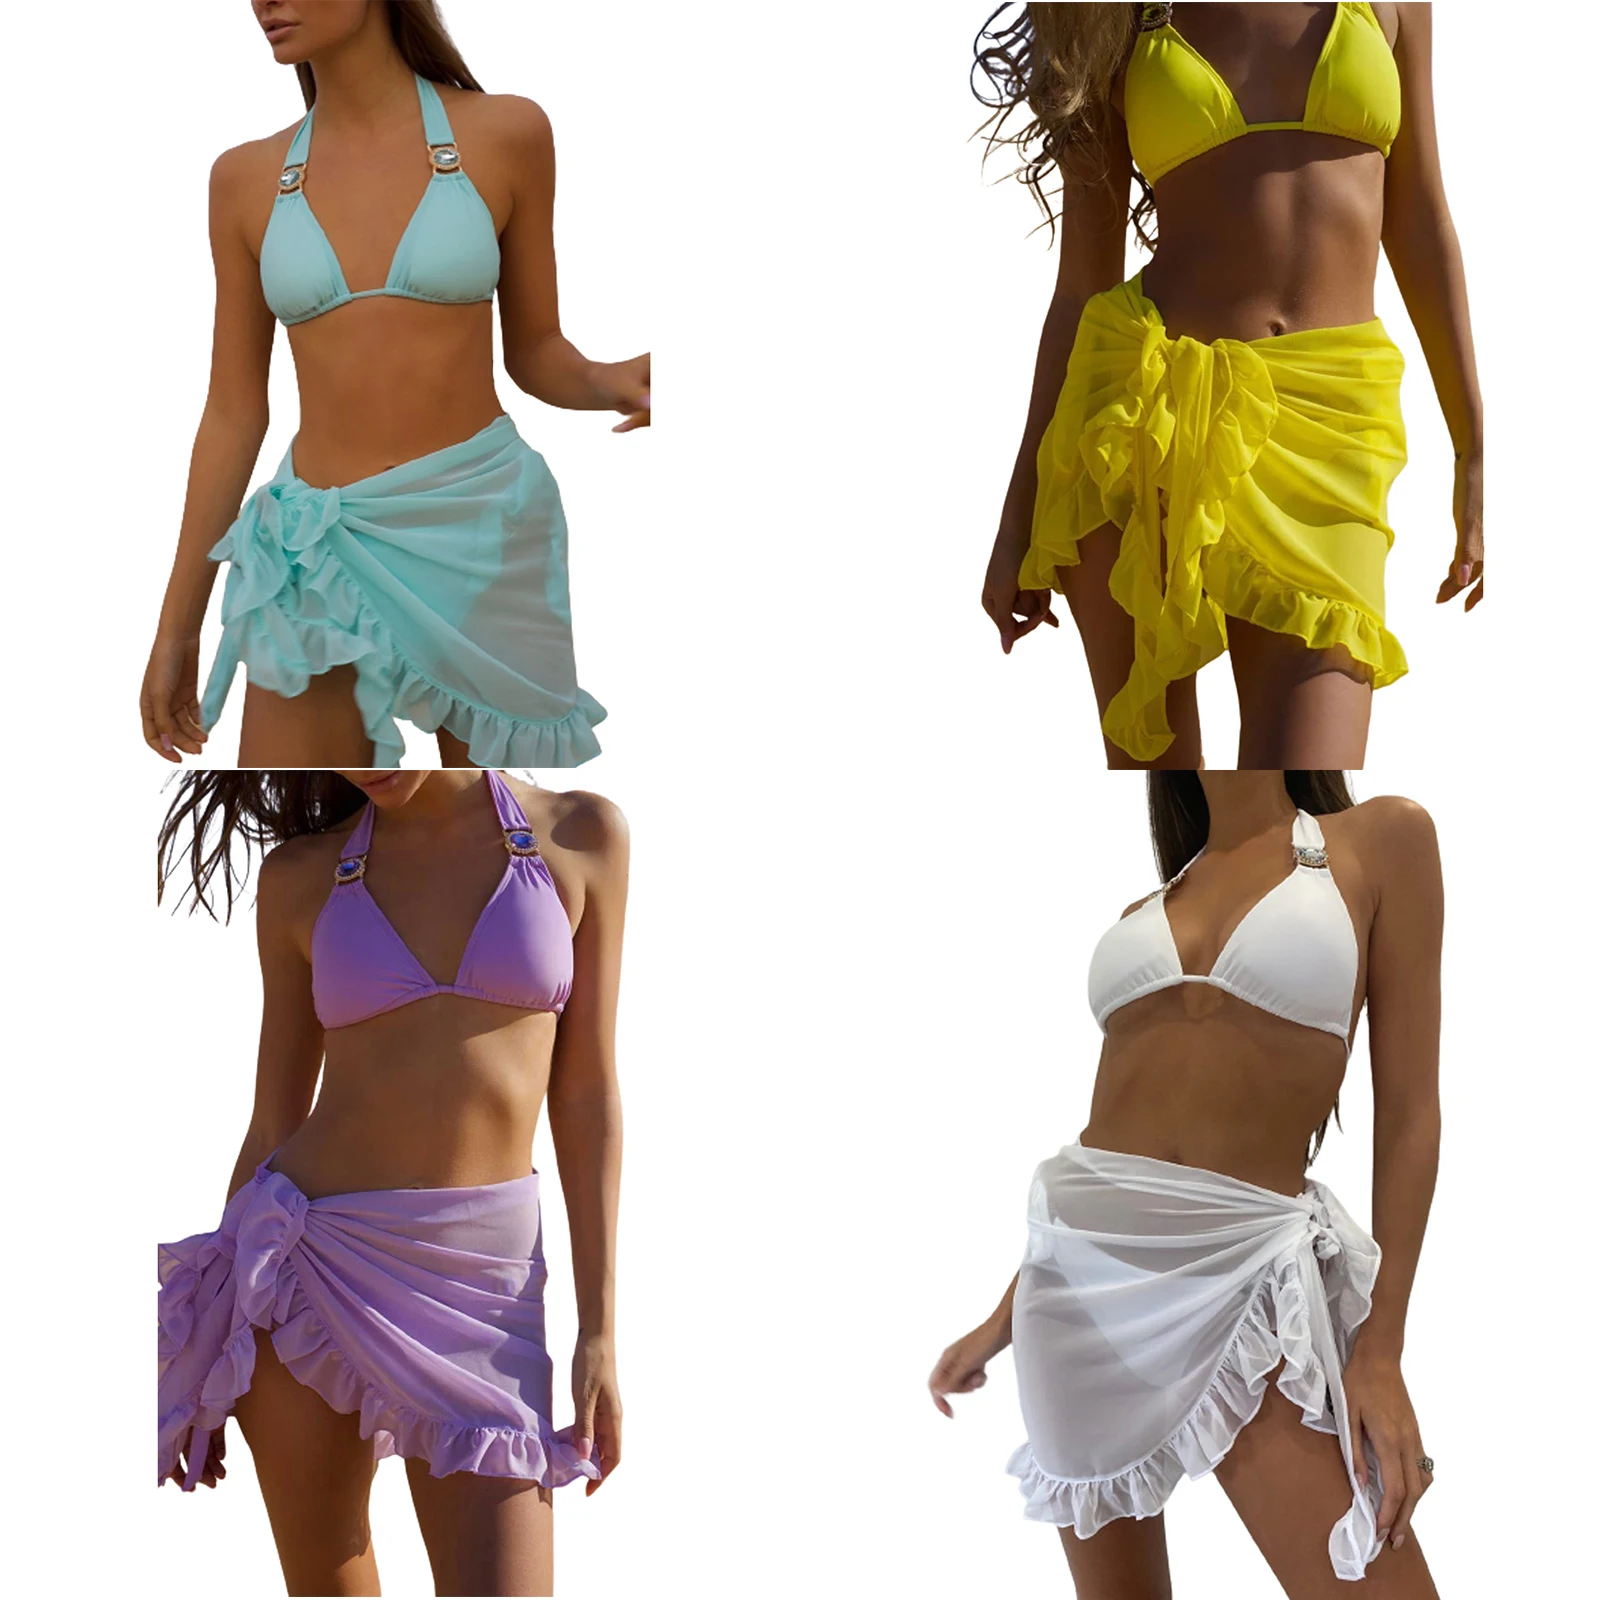 9 Renkler Bayanlar Moda Düz Renk Mayo Sarong Yarım Etek Bluz Yaz Plaj Dantel mini etek Mayo Kadınlar Bikini Bluz